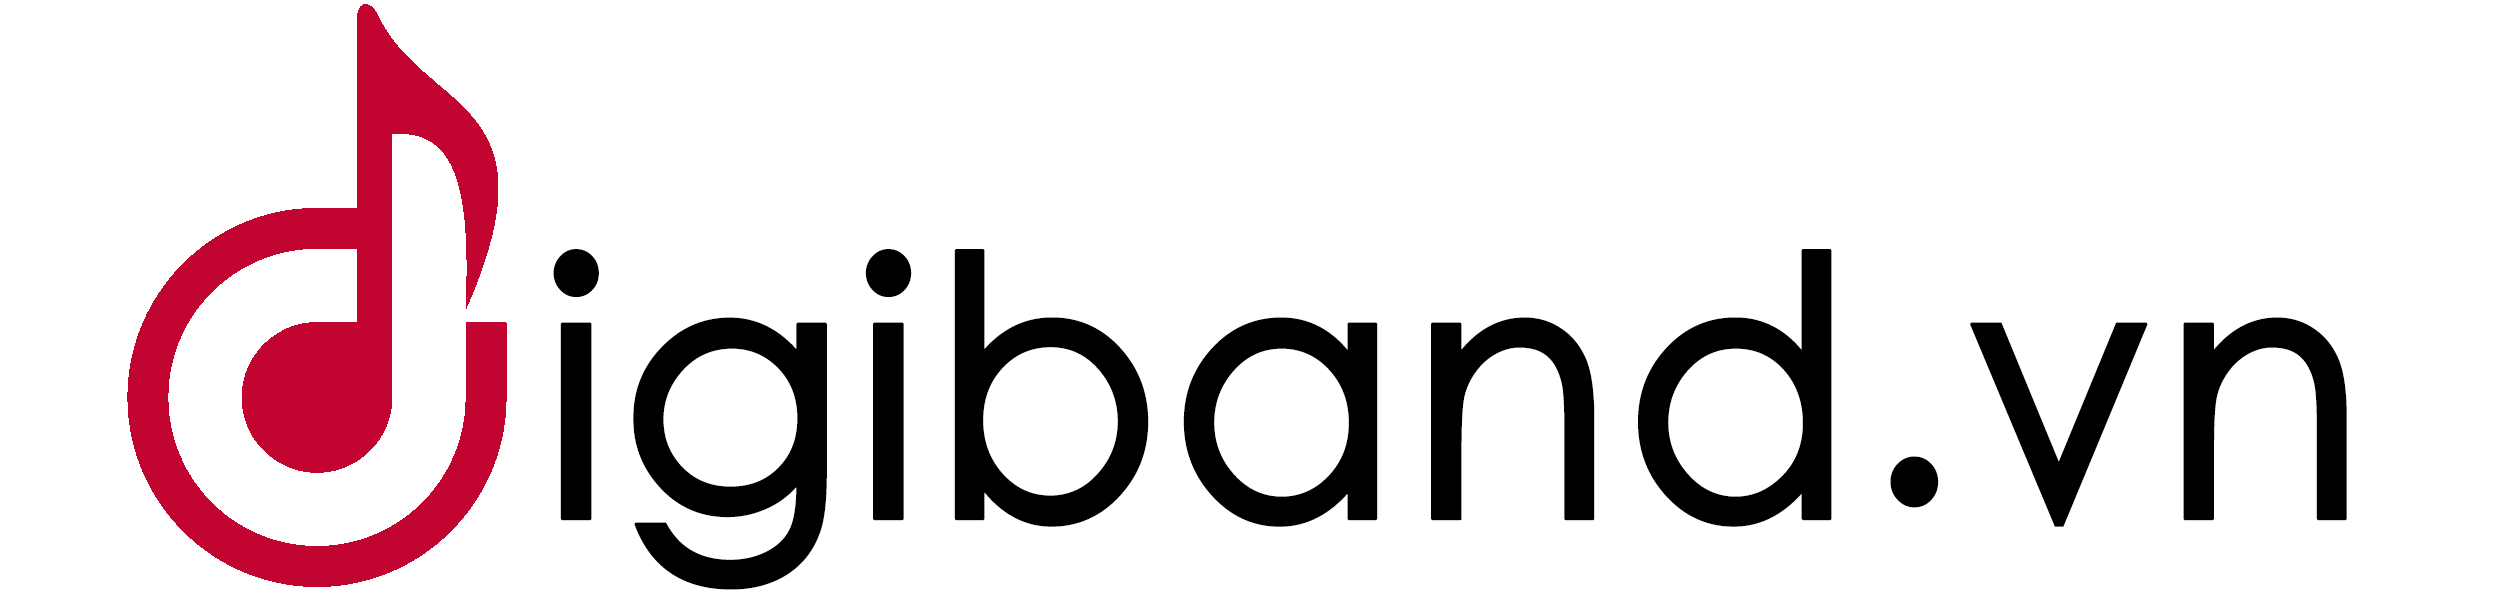 Digiband.vn – Chuyên cung cấp các sản phẩm nhạc cụ điện tử và phụ kiện